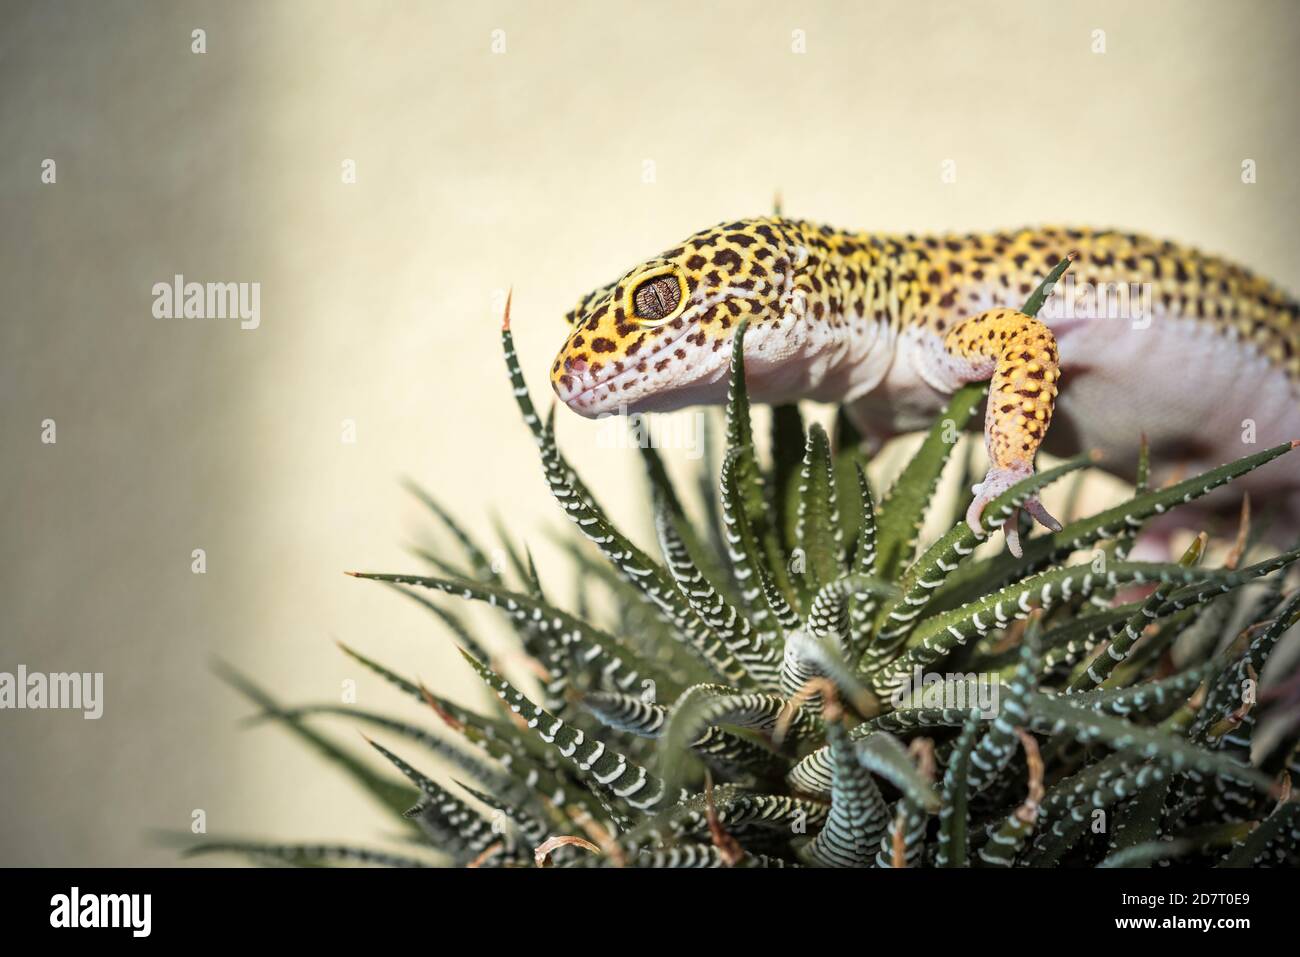 Eublepharis is cute leopard gecko Stock Photo